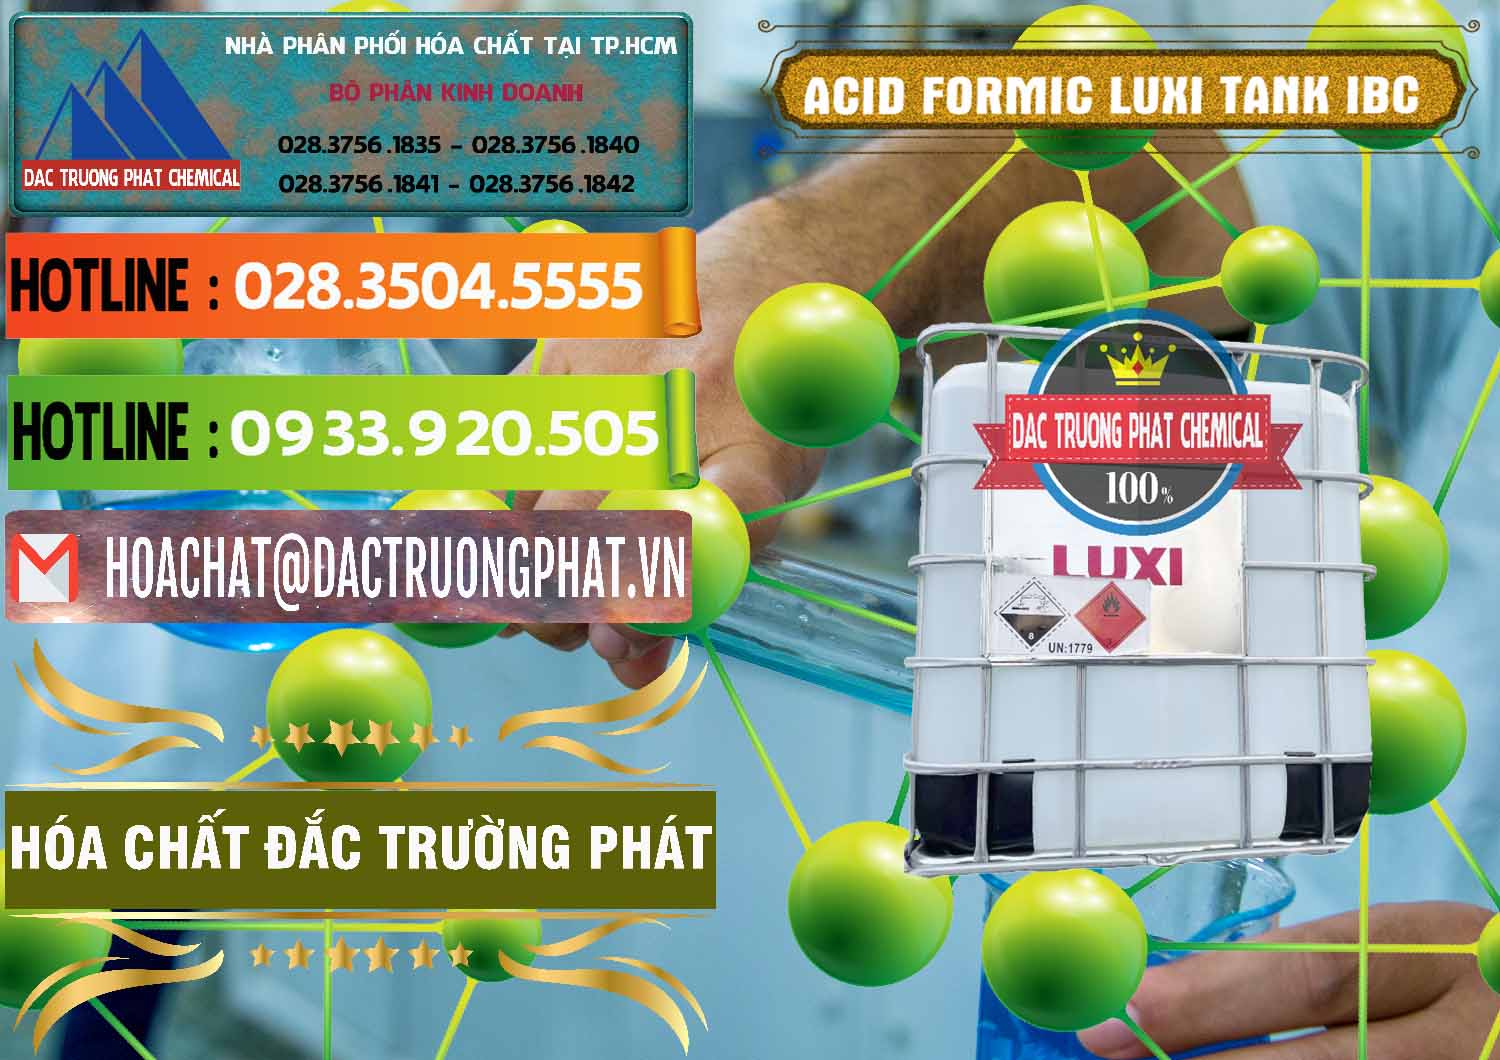 Phân phối & bán Acid Formic - Acid Formic Tank - Bồn IBC Luxi Trung Quốc China - 0400 - Chuyên phân phối - cung cấp hóa chất tại TP.HCM - cungcaphoachat.com.vn